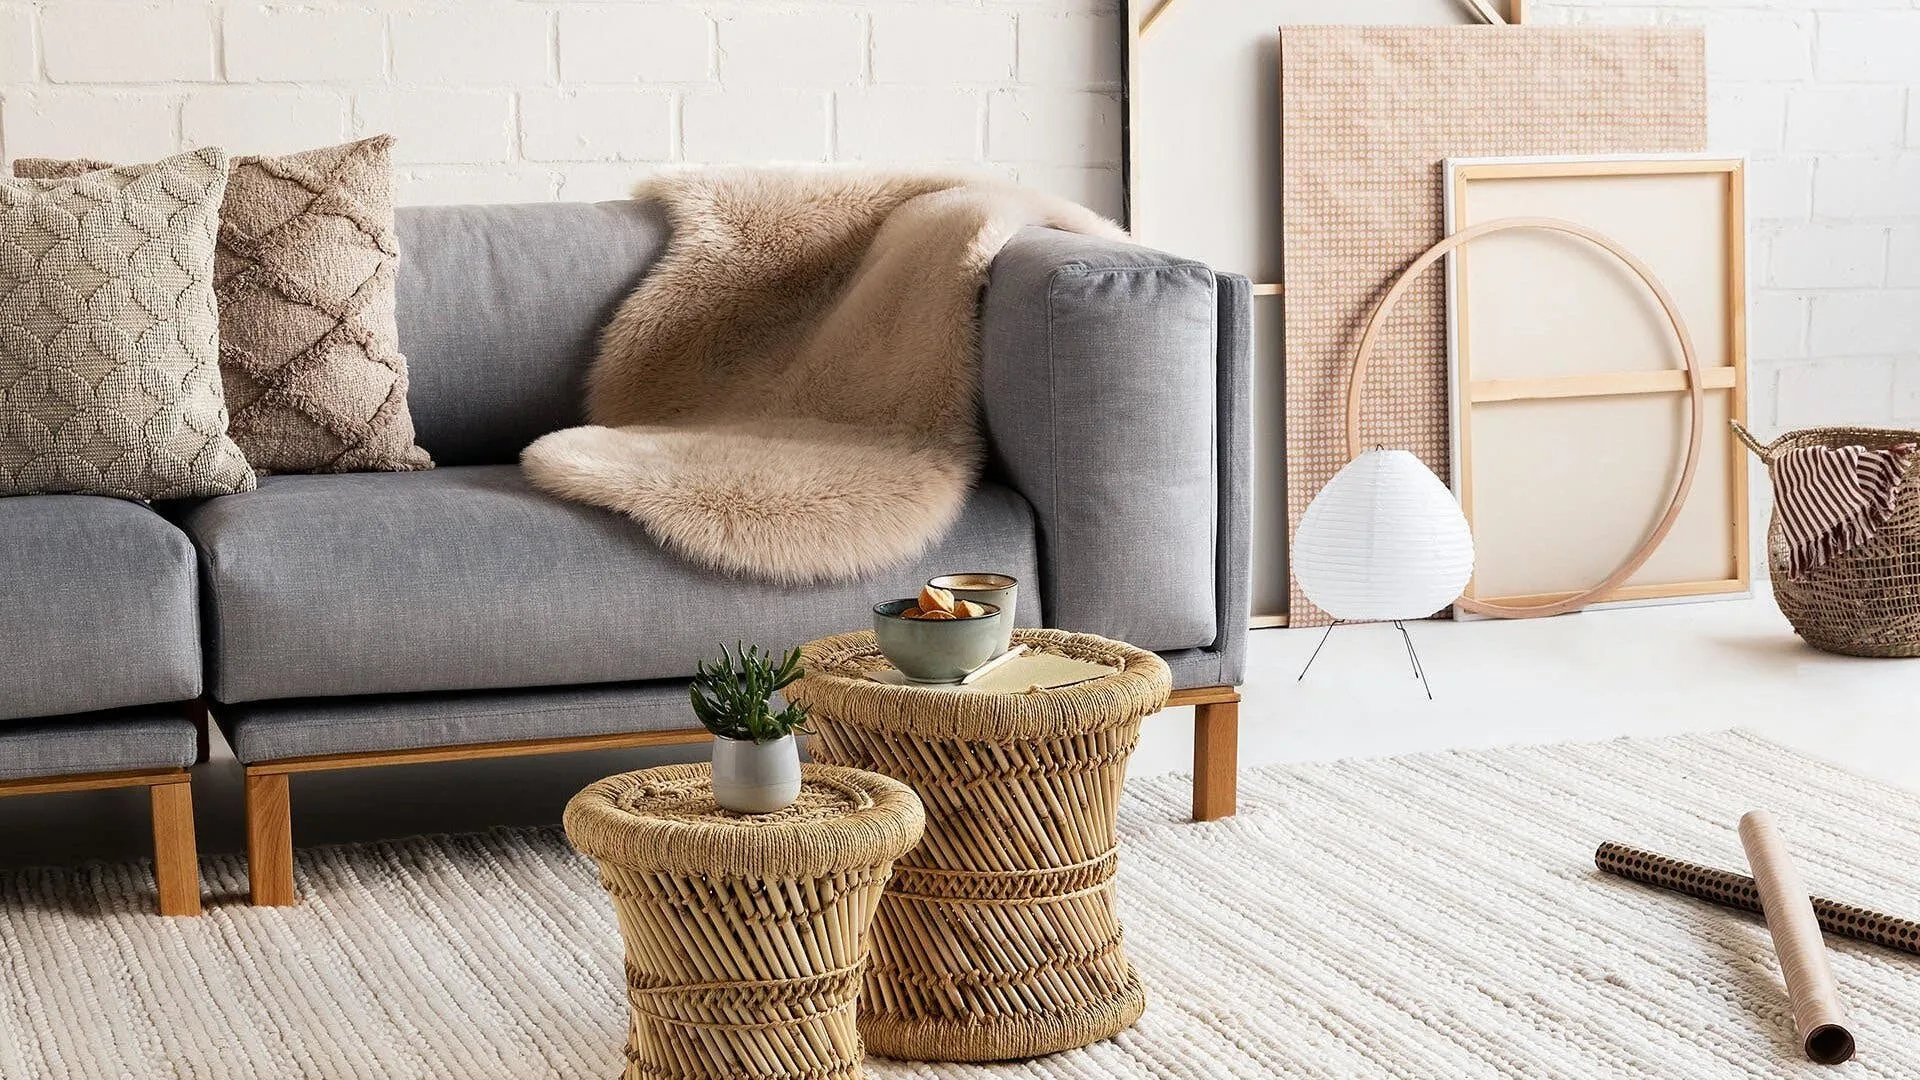 Natürliches Wohnzimmer in Erdtönen wie Braun, Grau und Beige mit einem Couch-Tisch aus Bast und einer Sukkulente als dekoratives Element